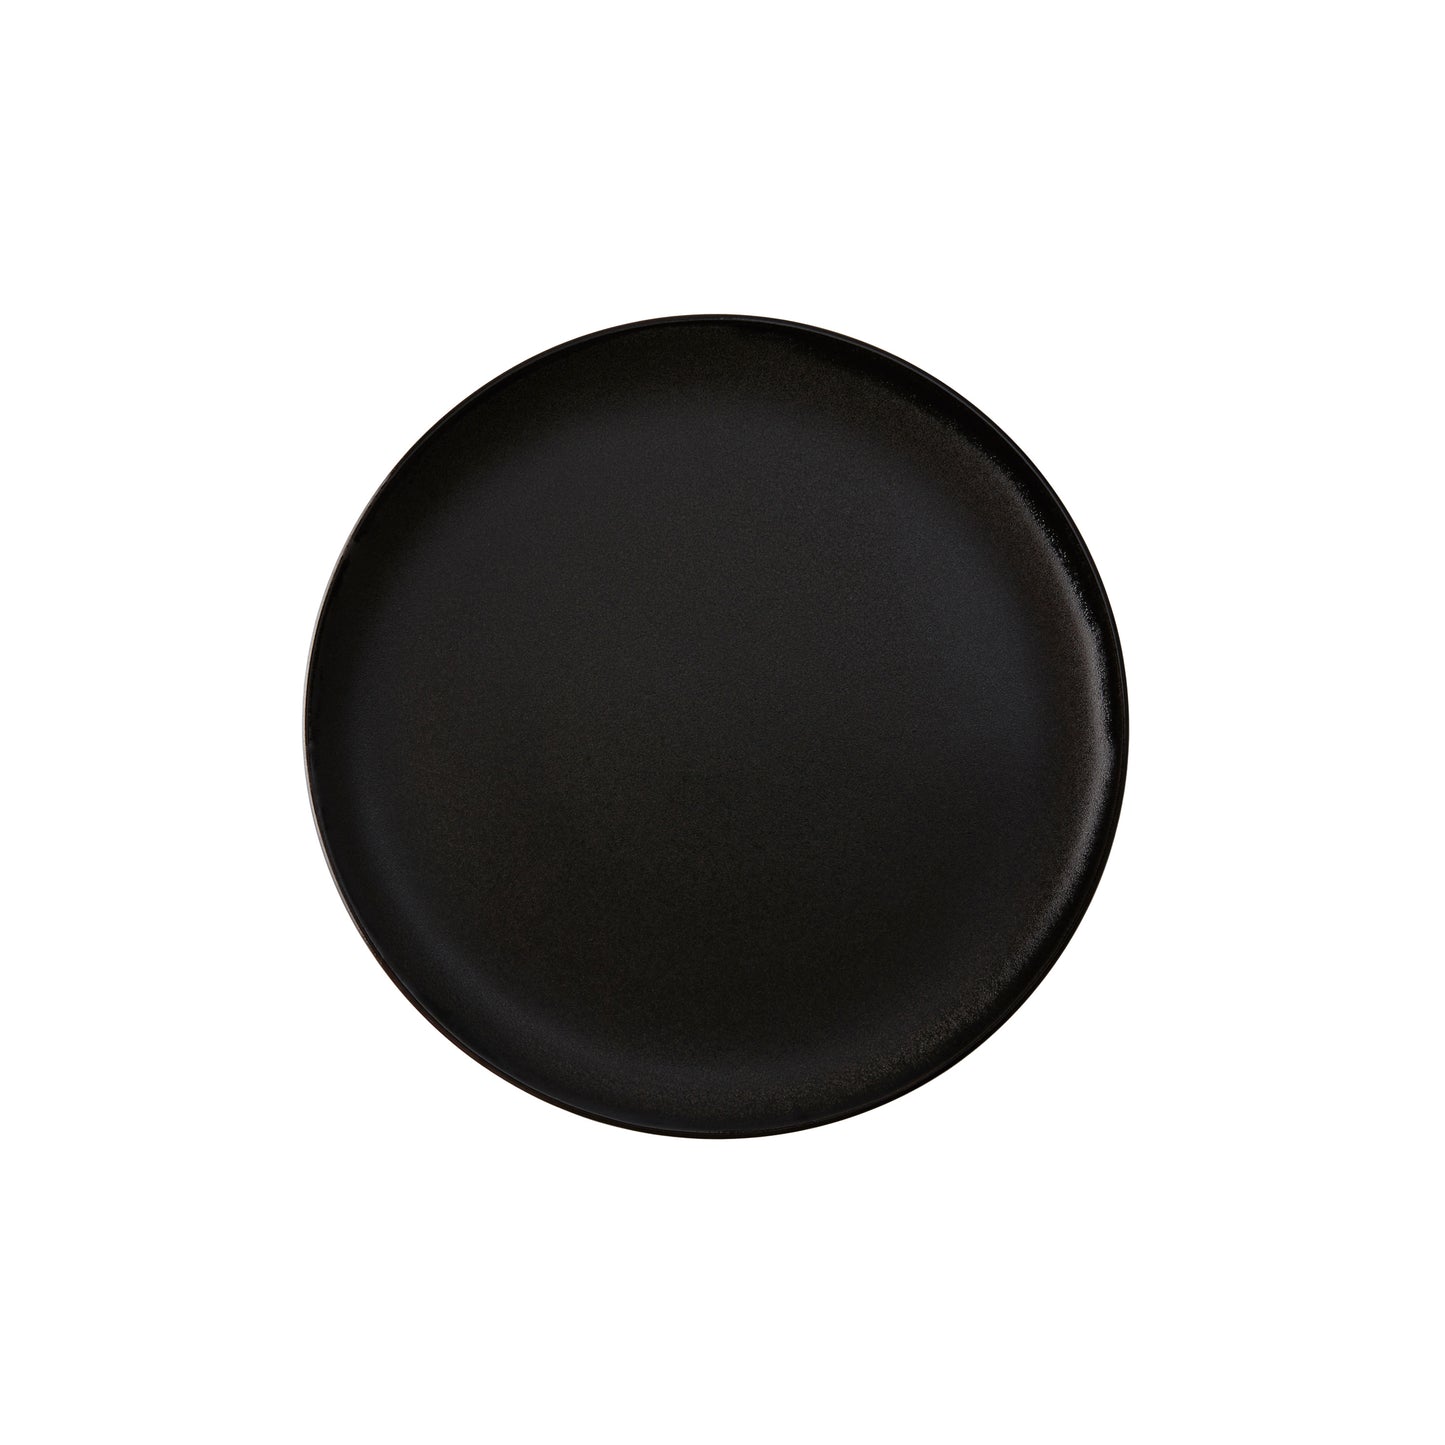 DIMM: Aida RAW diskur · 23 cm · Titanium black